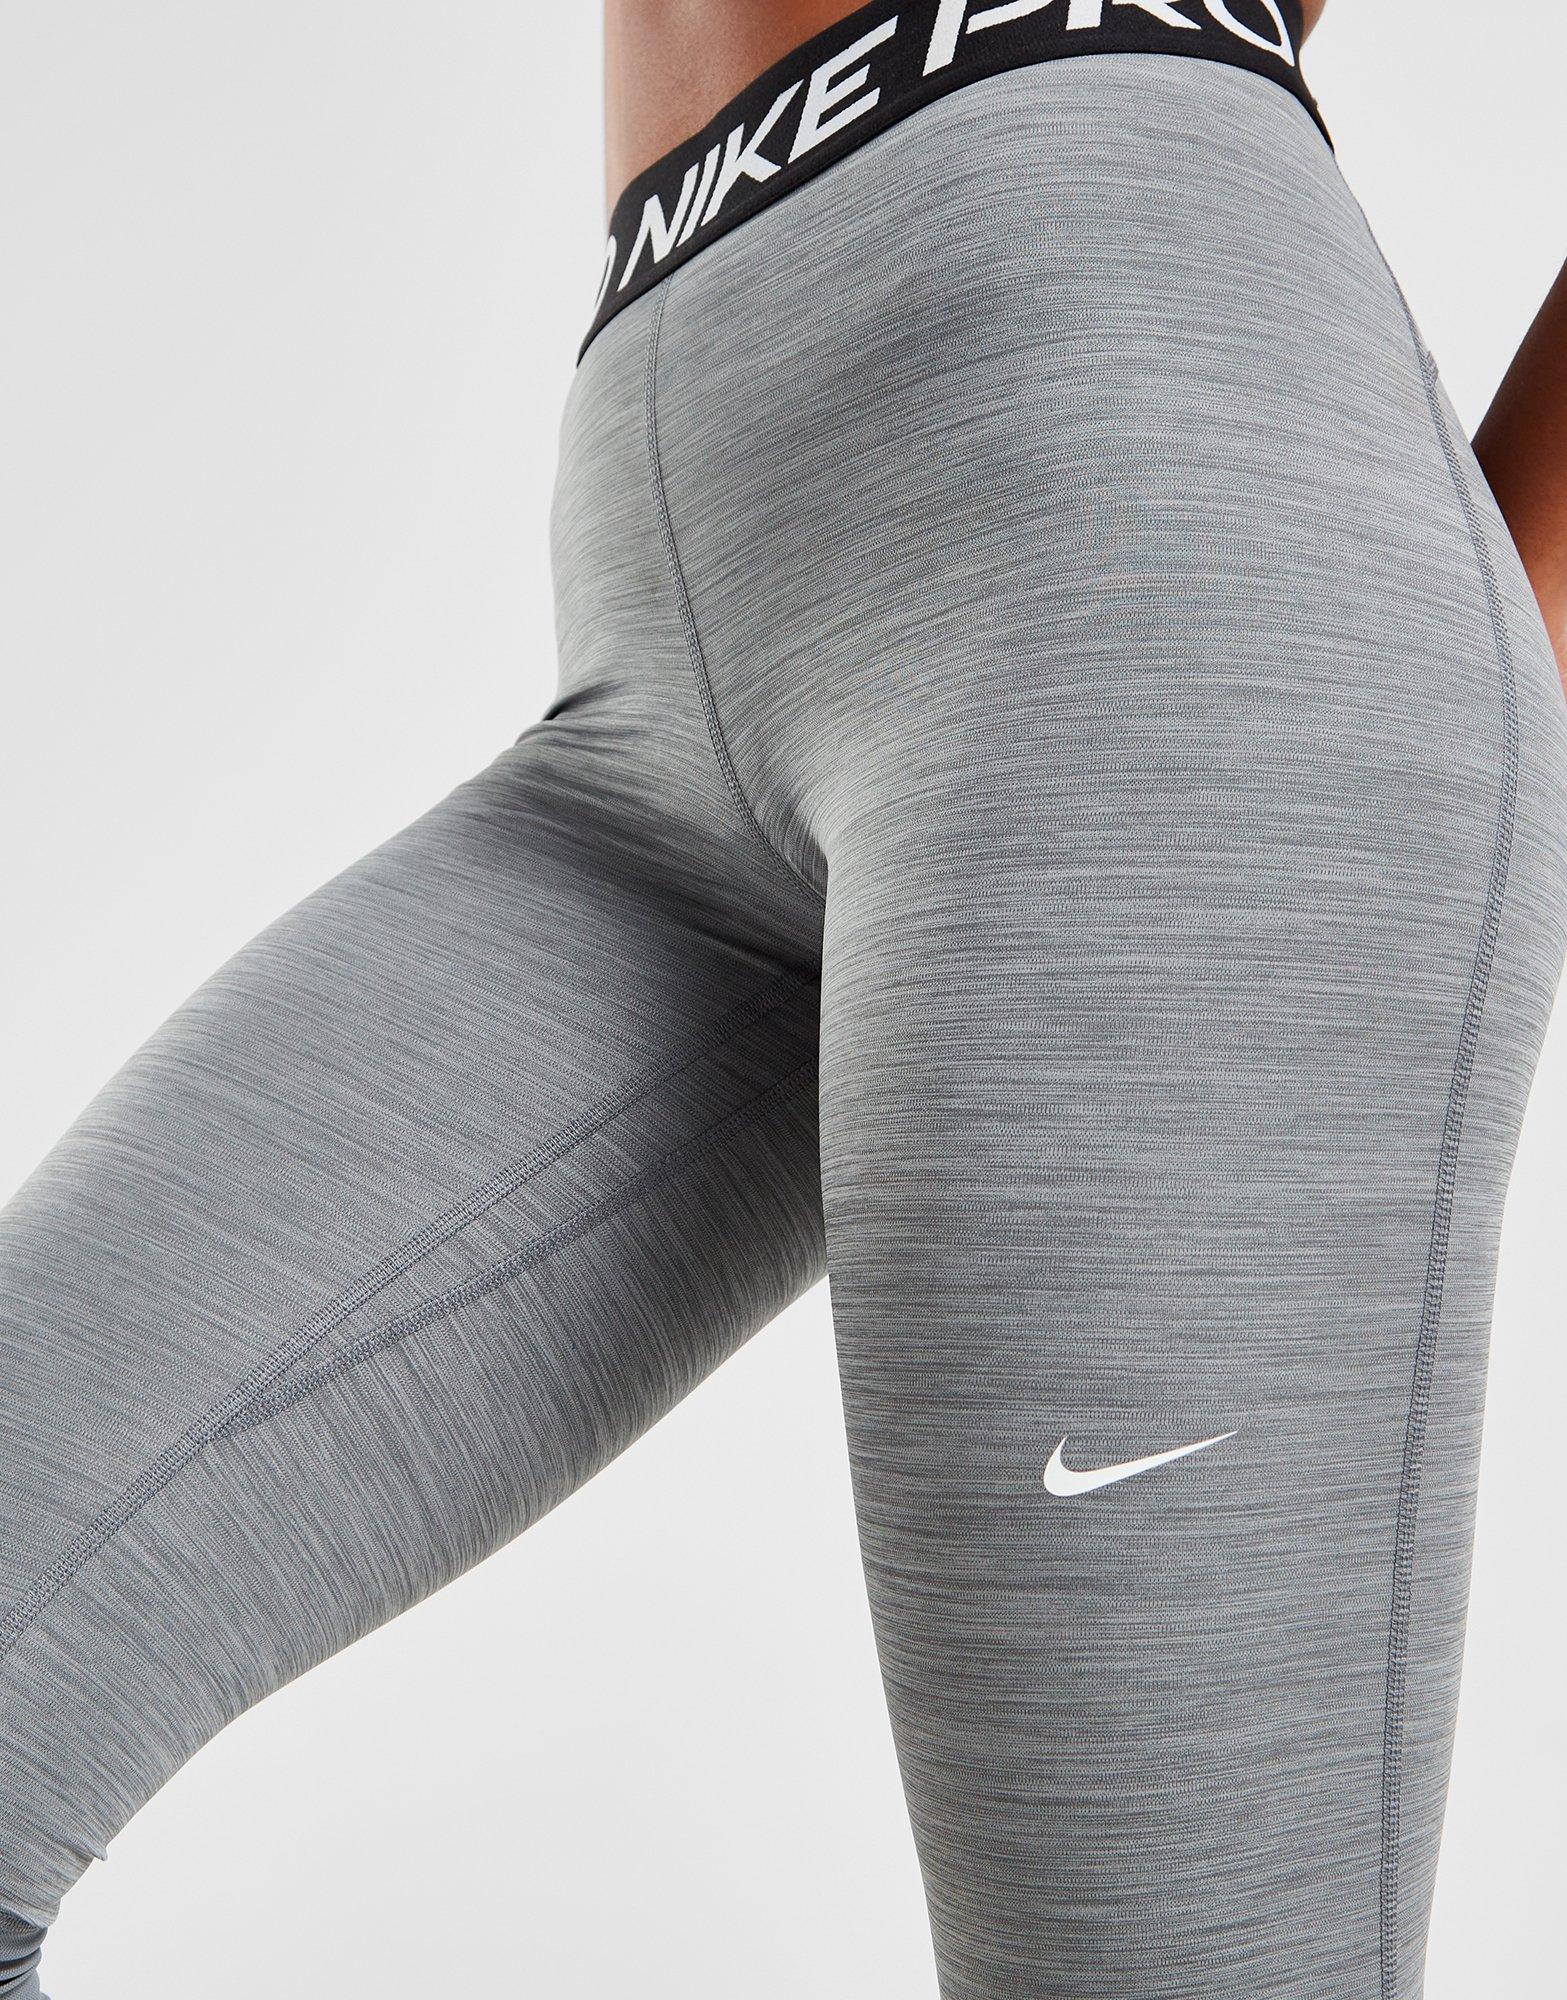 Nike Pro seamless legging stretch dri fit grey gym ex… - Gem